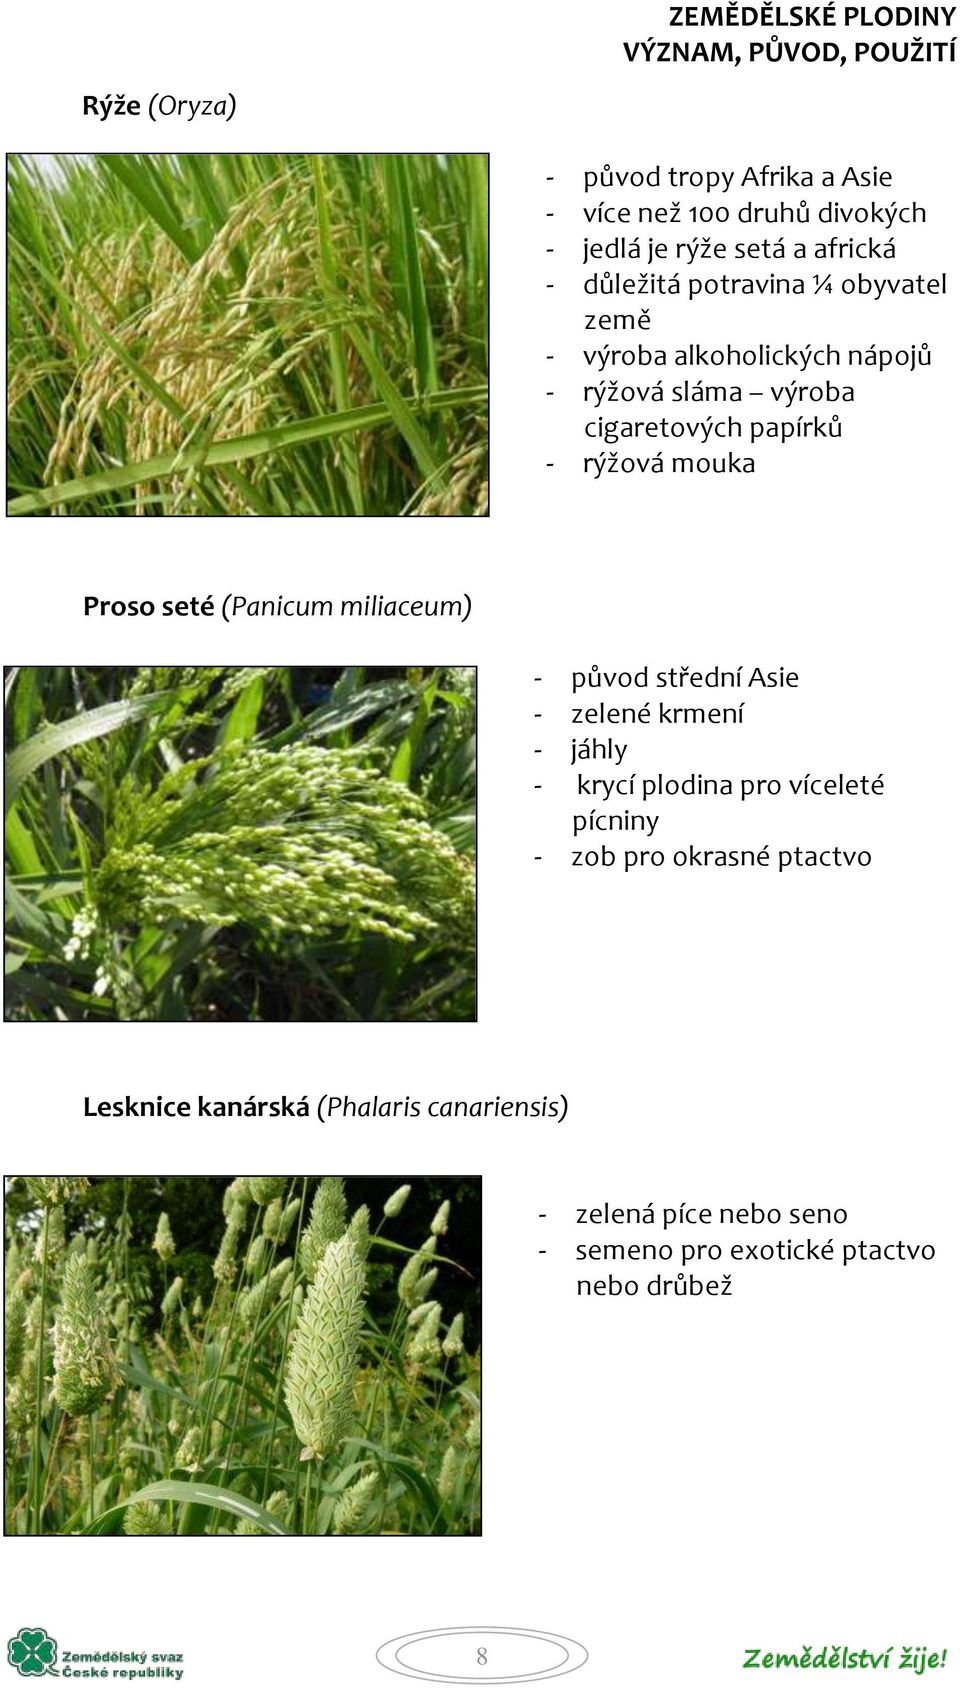 Proso seté (Panicum miliaceum) - původ střední Asie - zelené krmení - jáhly - krycí plodina pro víceleté pícniny - zob